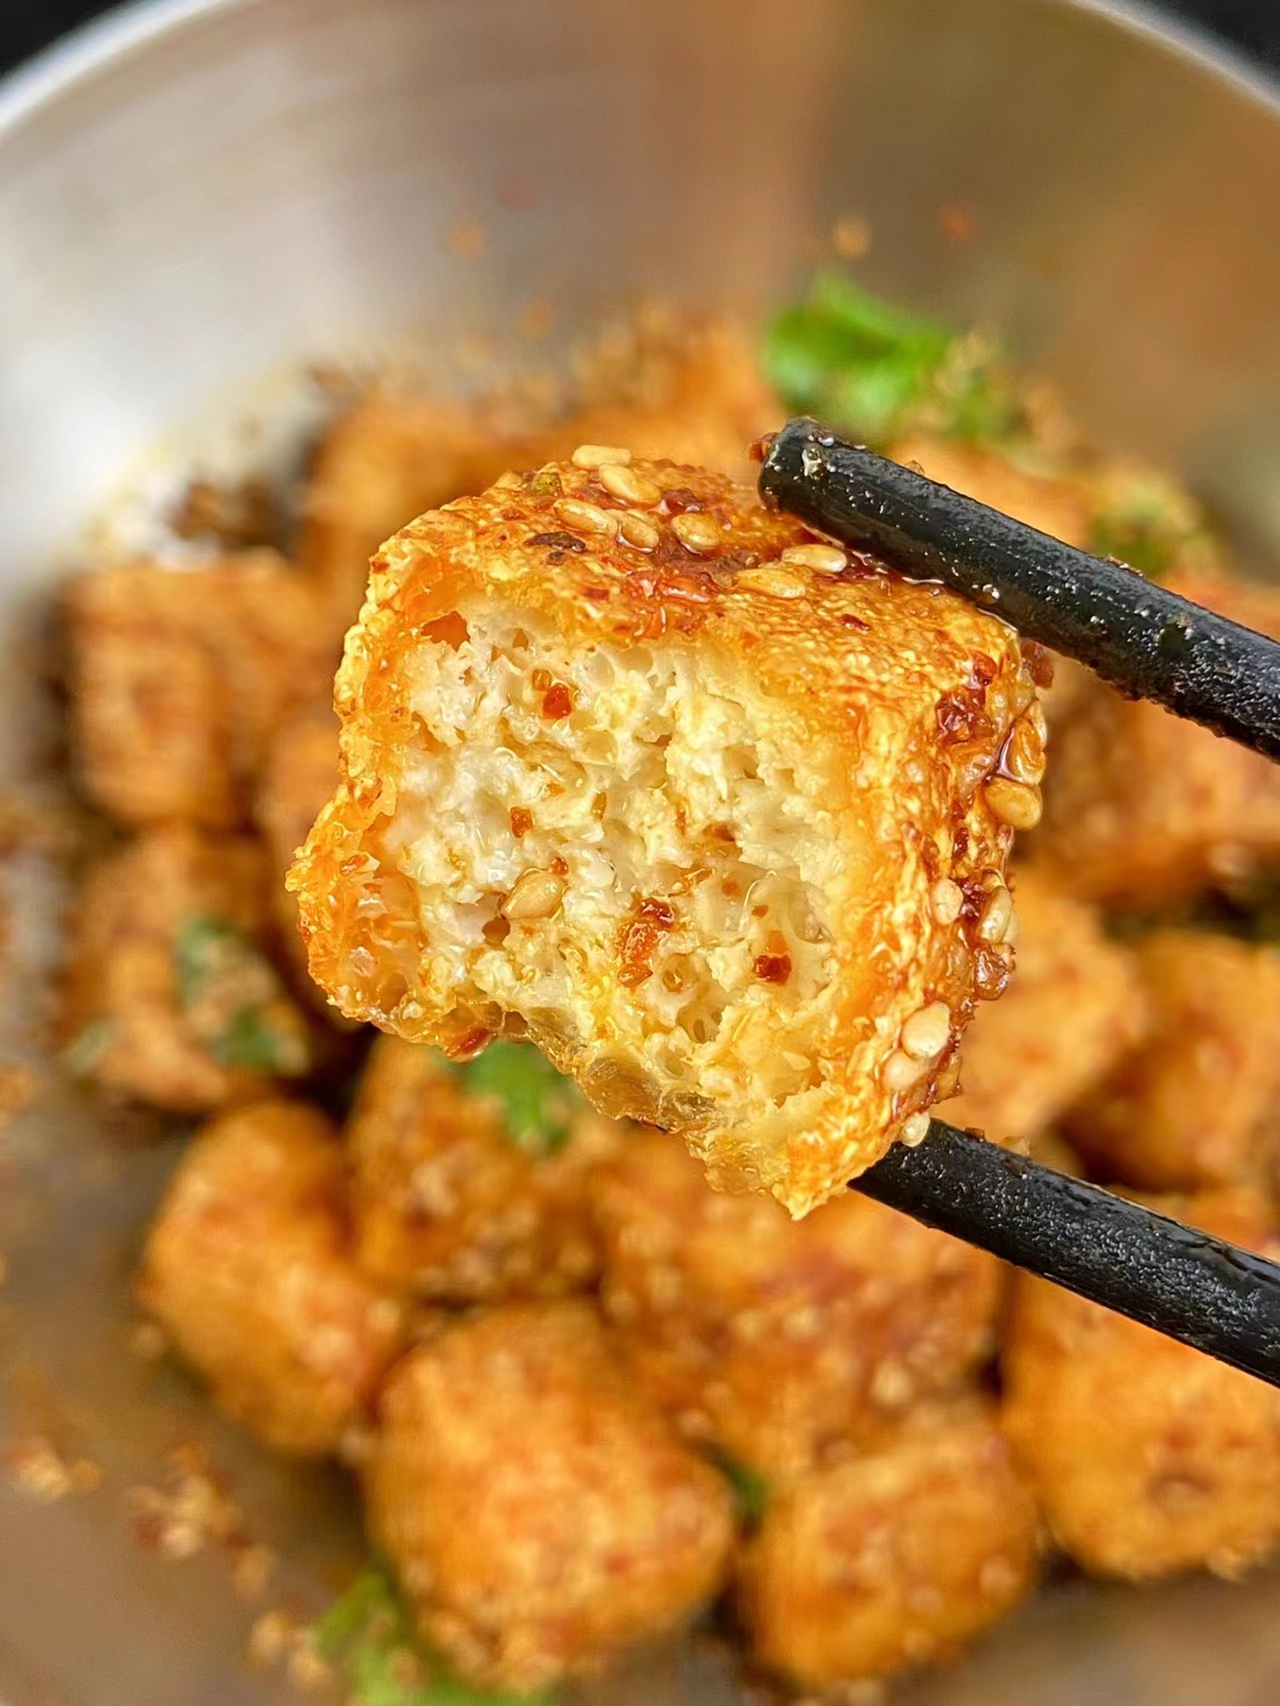 脆皮豆腐家常做法,做法简单,烧出来的豆腐金黄,酥脆美味!